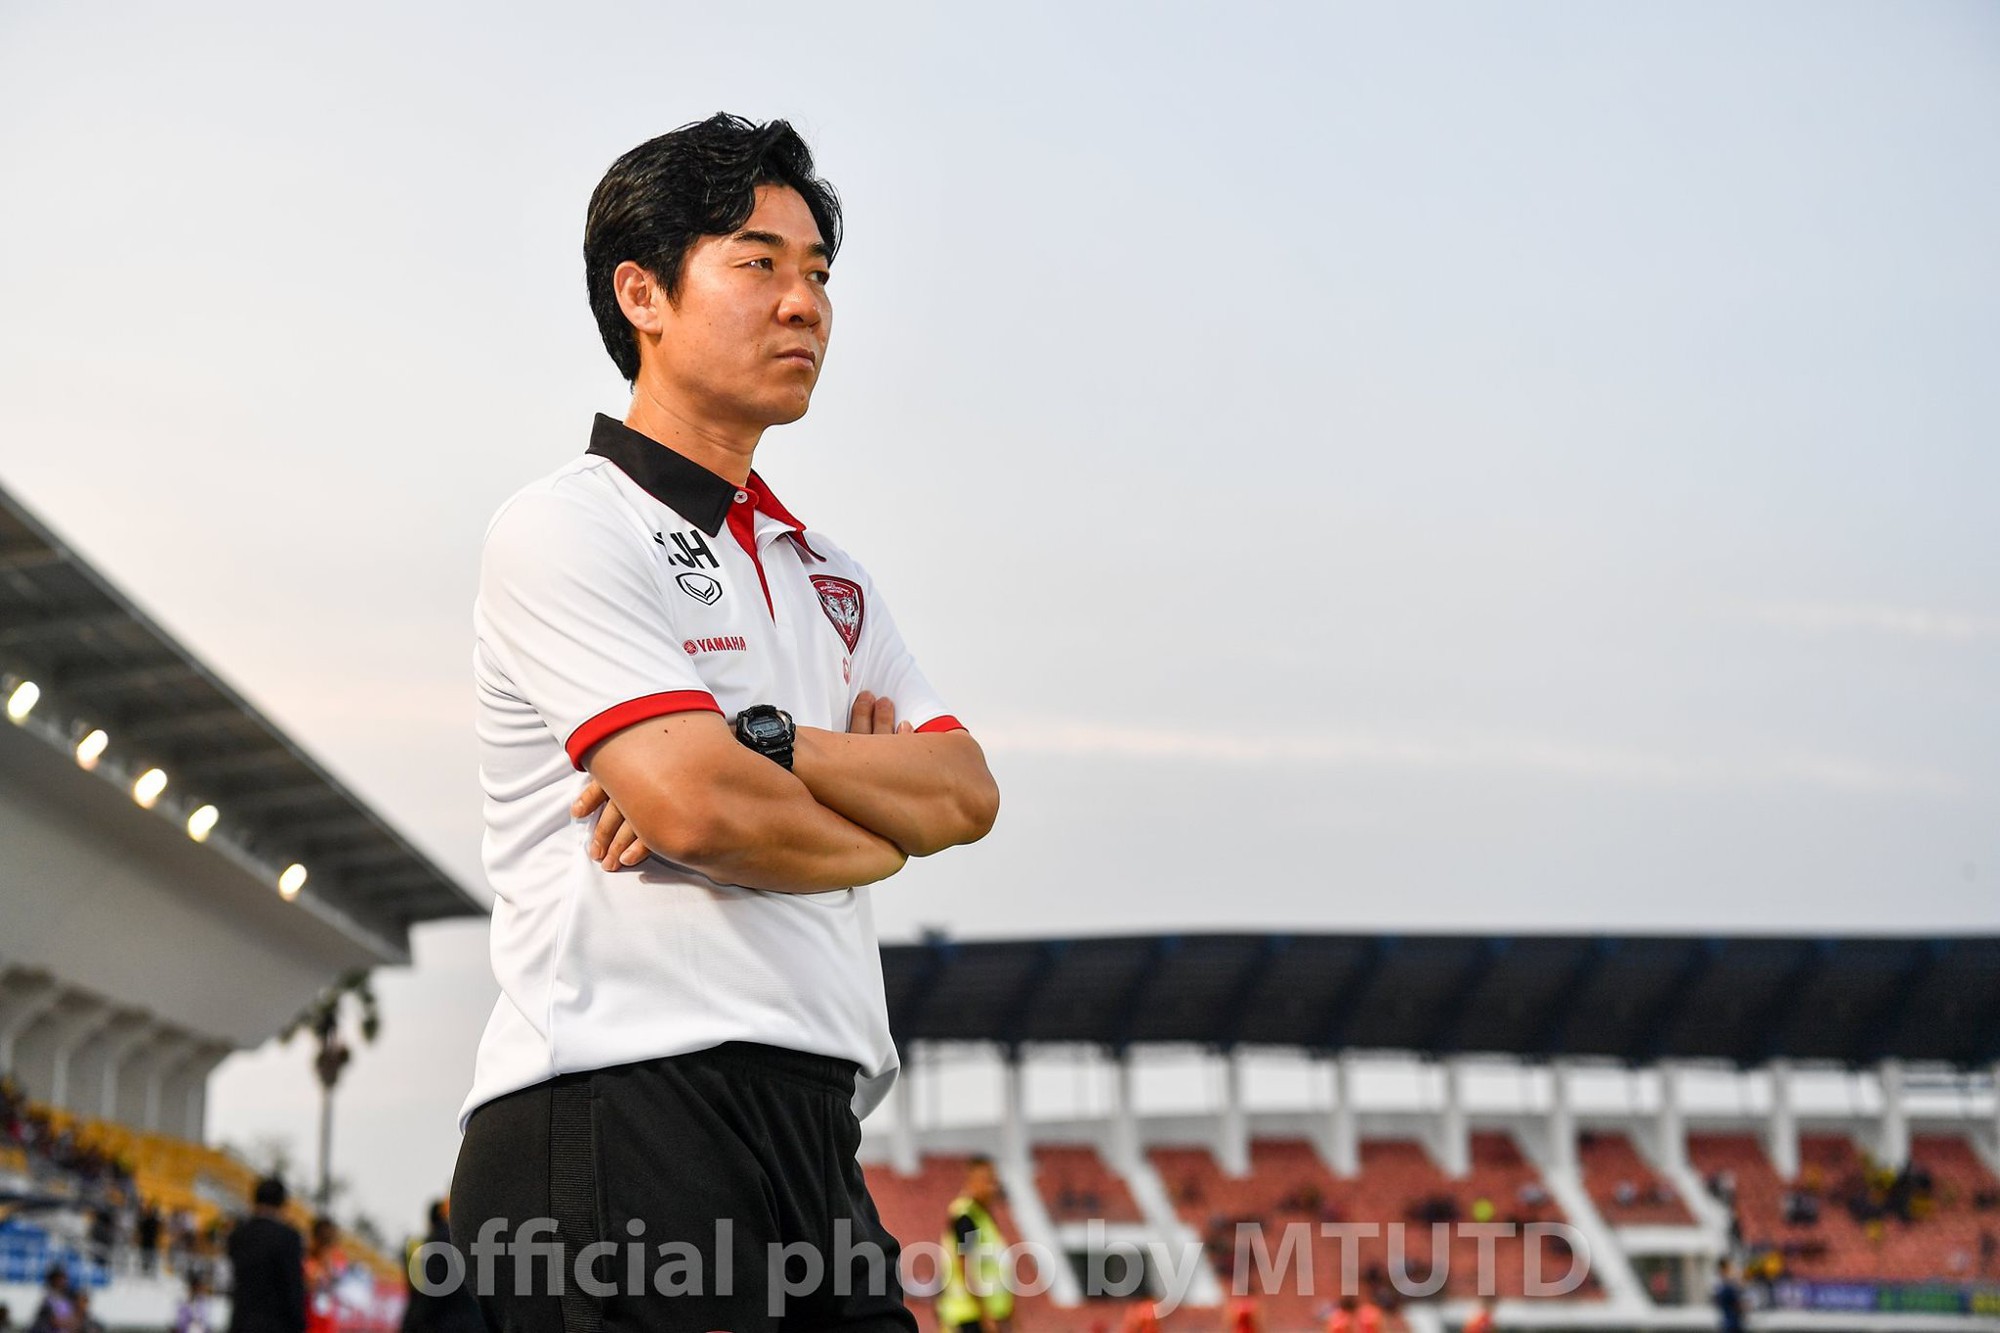 Đội bóng của Đặng Văn Lâm lại tính sa thải HLV trưởng lần thứ 2 trong mùa giải - Ảnh 1.